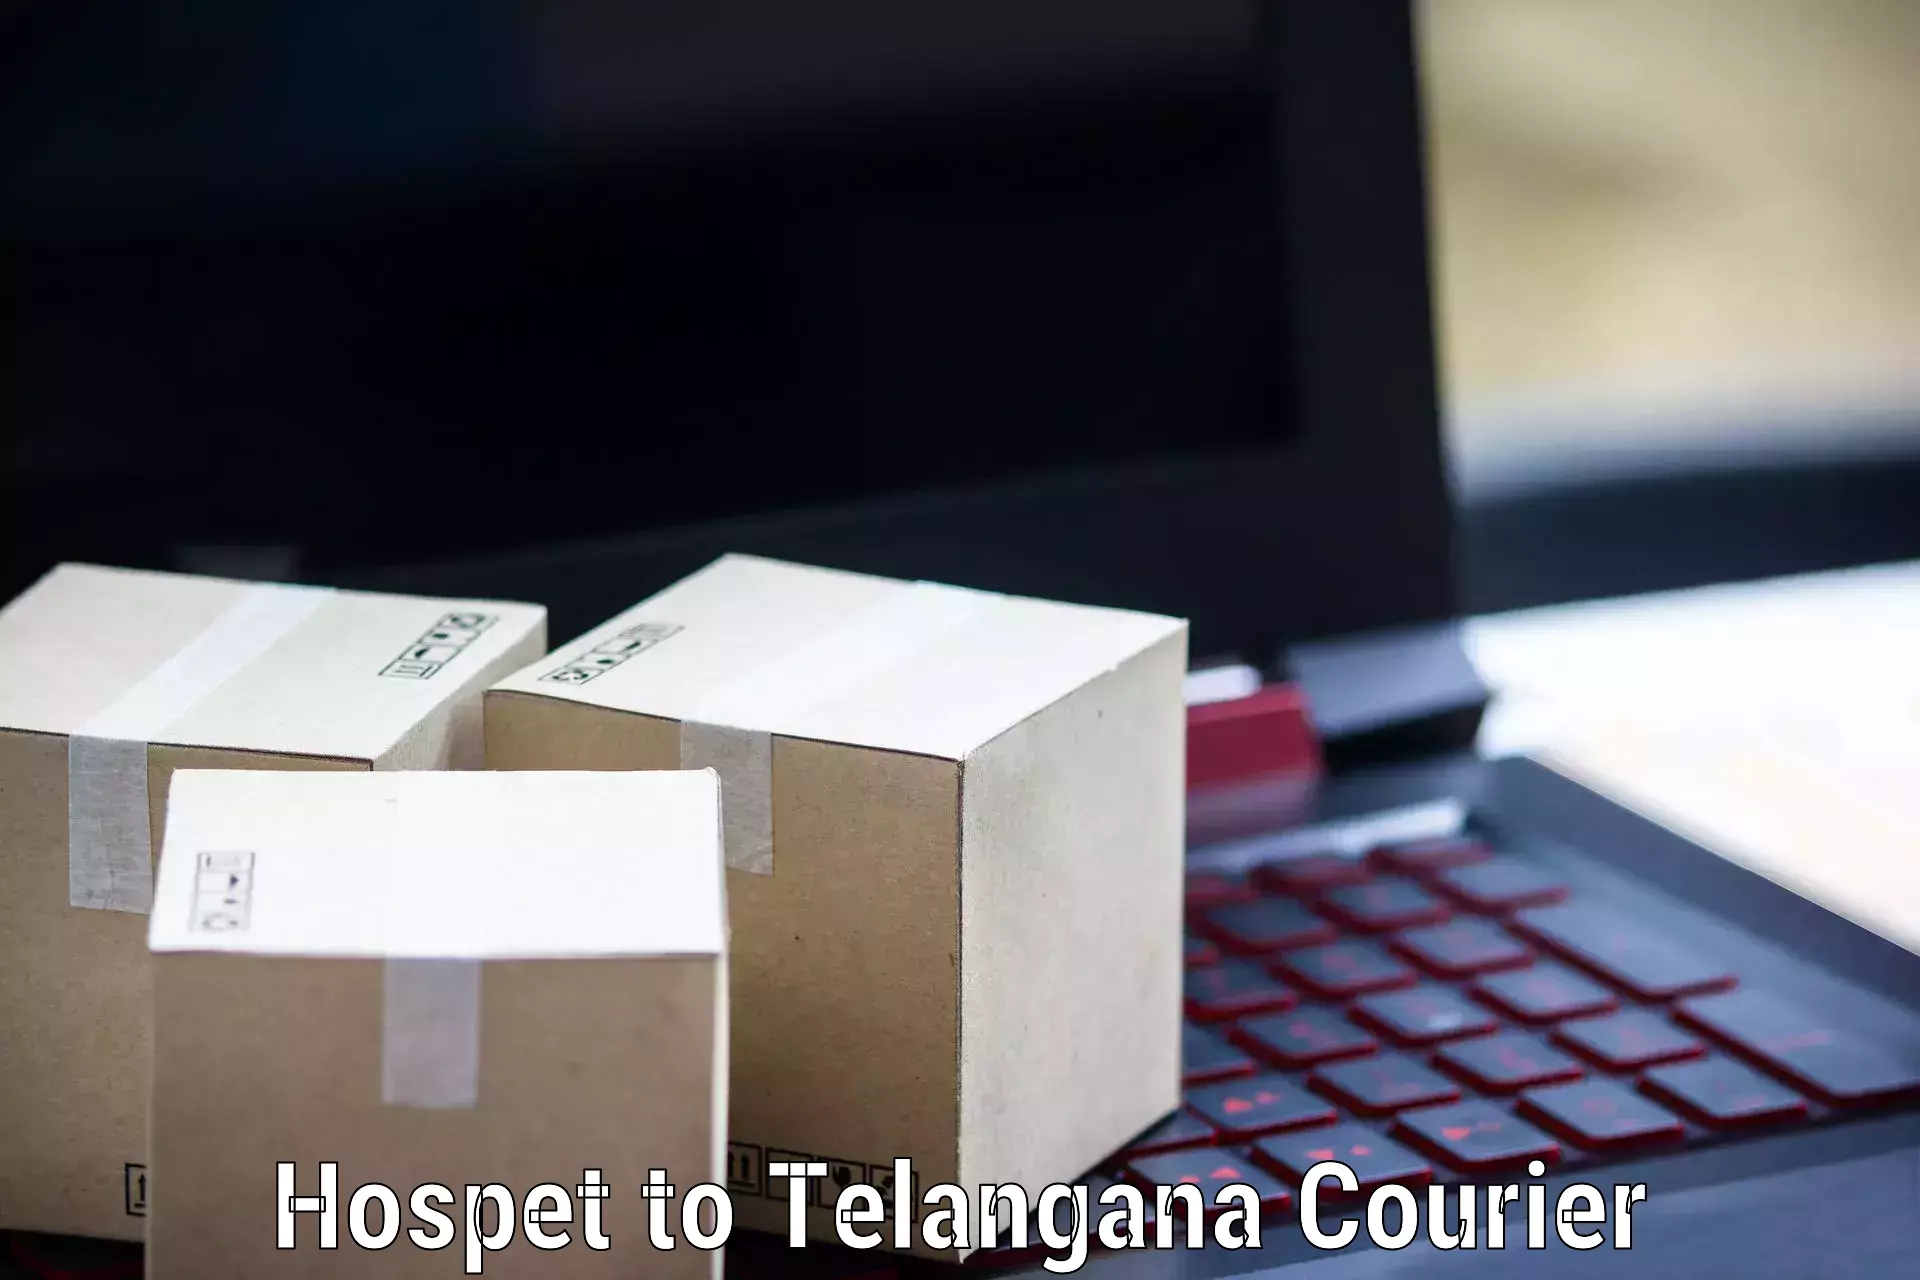 Express package handling Hospet to Thirumalagiri